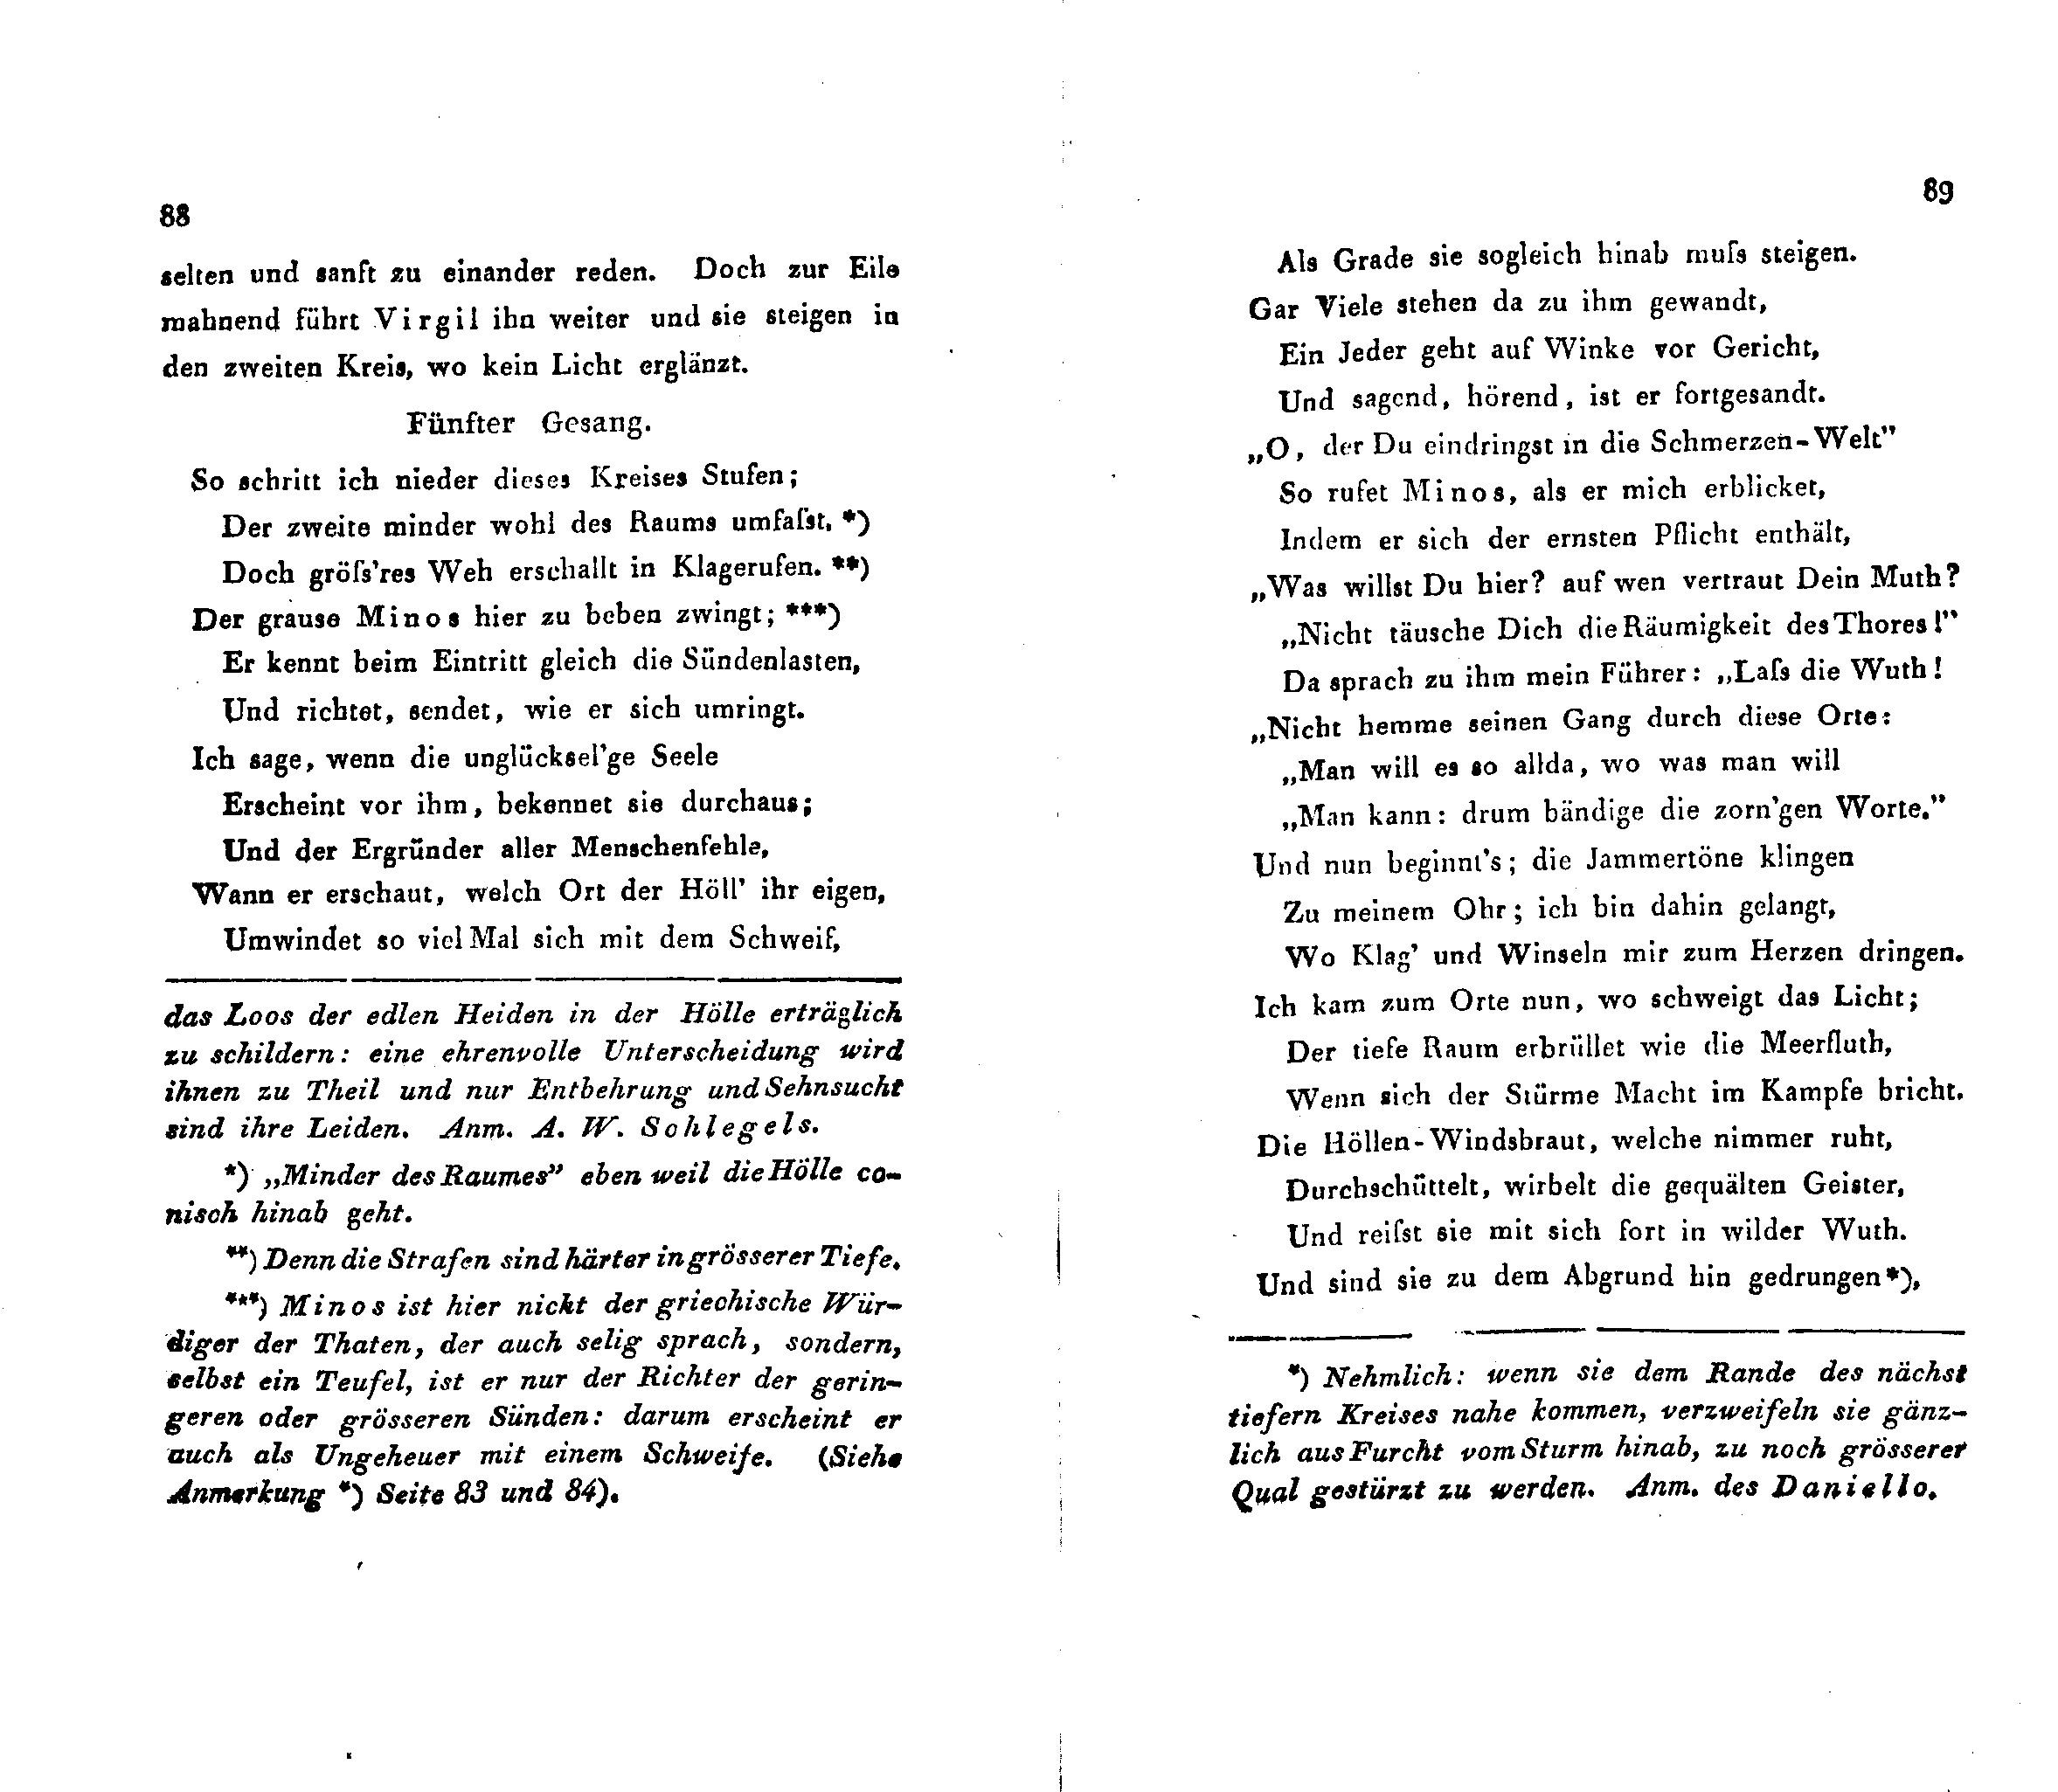 Ueber Dante Alighieri, seine Zeit und seine Divina Comedia (1824 – 1825) | 12. (88-89) Main body of text